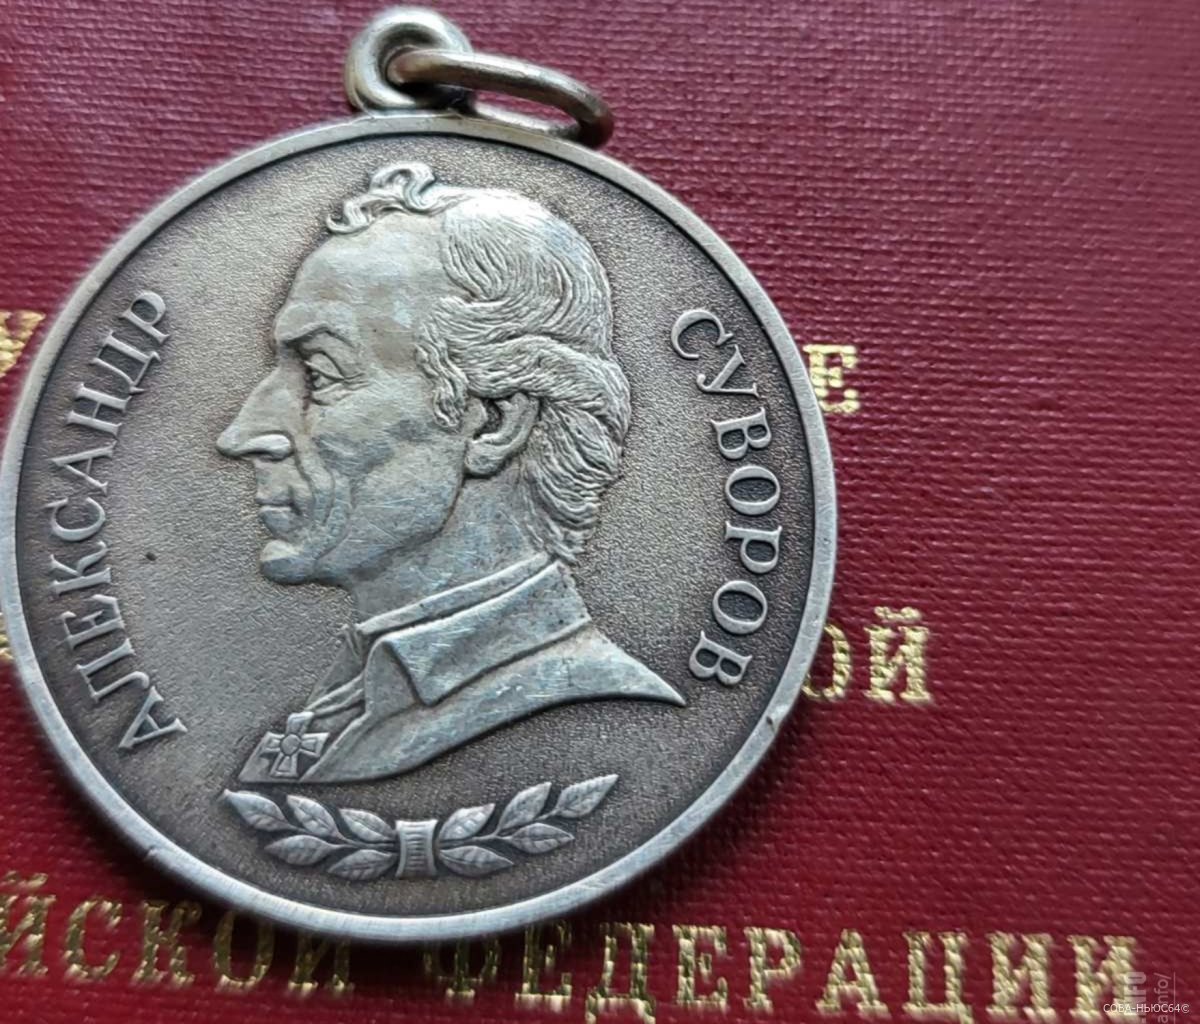 Саратовца-участника СВО Сергея Лозанова наградили медалью Суворова